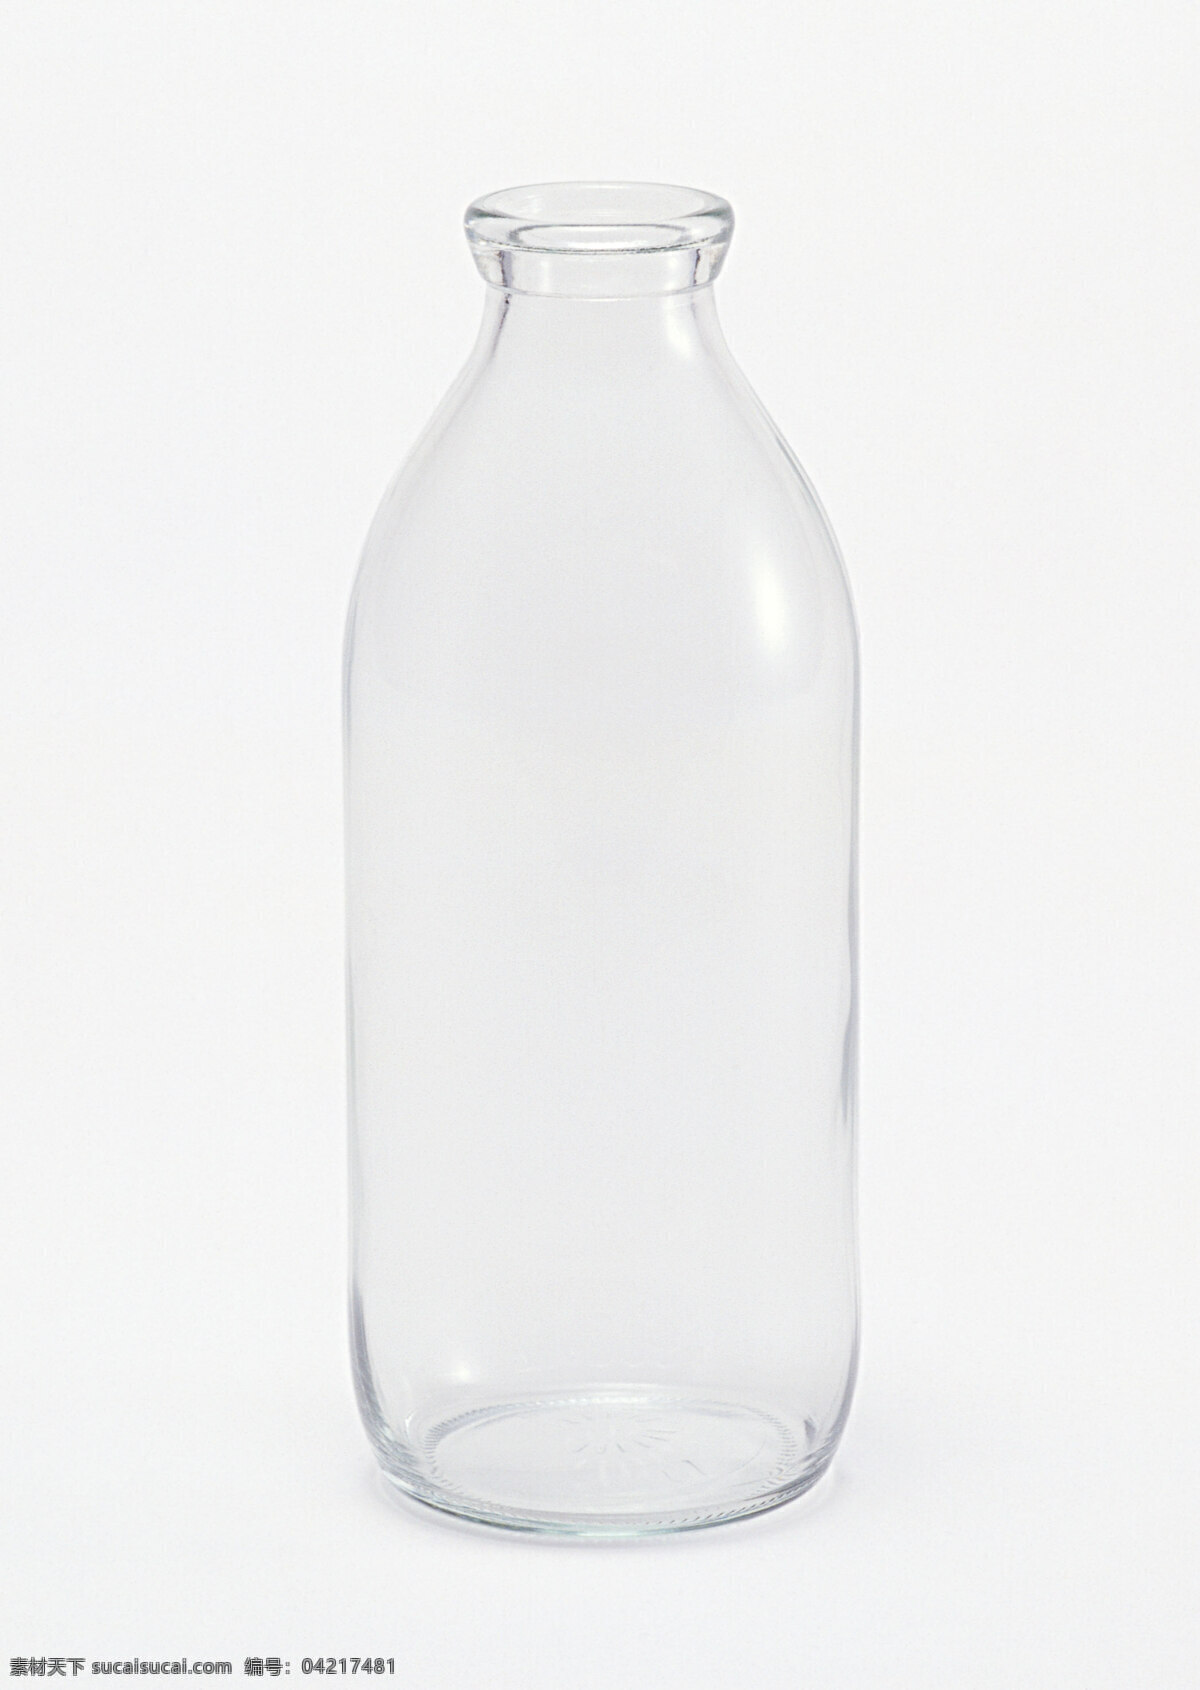 玻璃瓶 牛奶瓶 生活物品 生活意境摄影 生活百科 生活素材